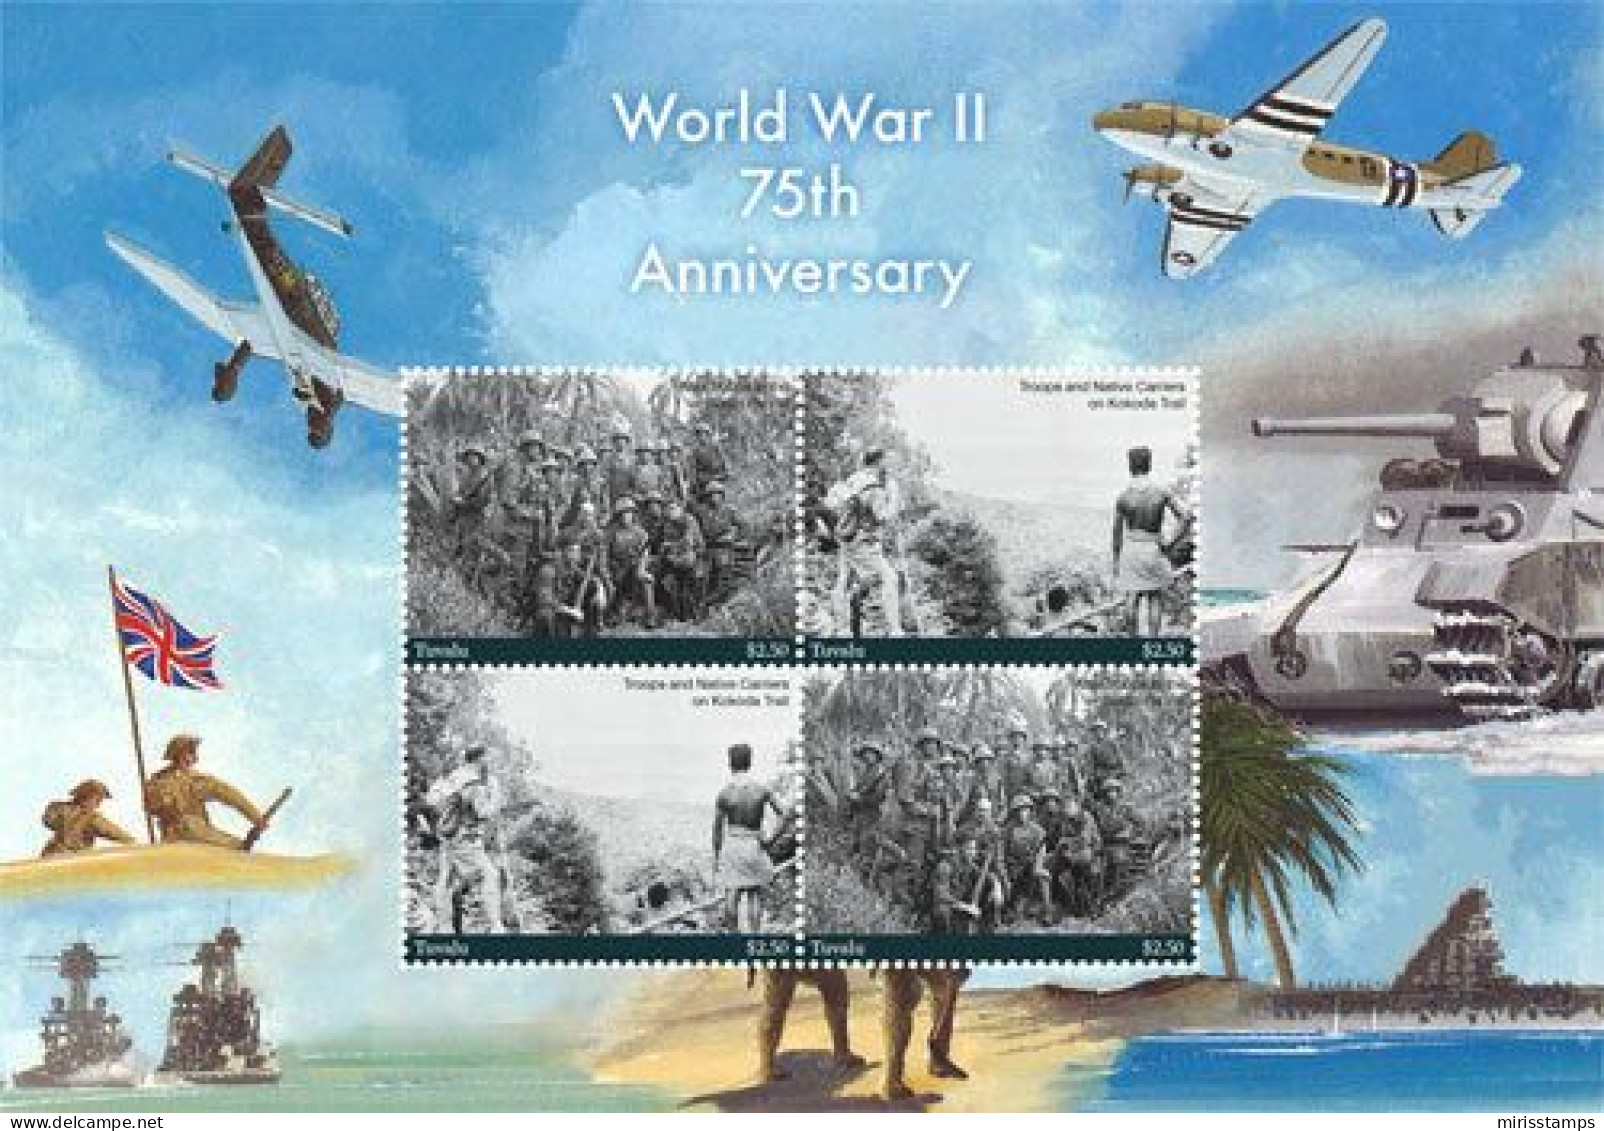 Tuvalu 2017 World War II, 75th Anniv. 4v M/s, Mint NH, History - World War II - Tuvalu